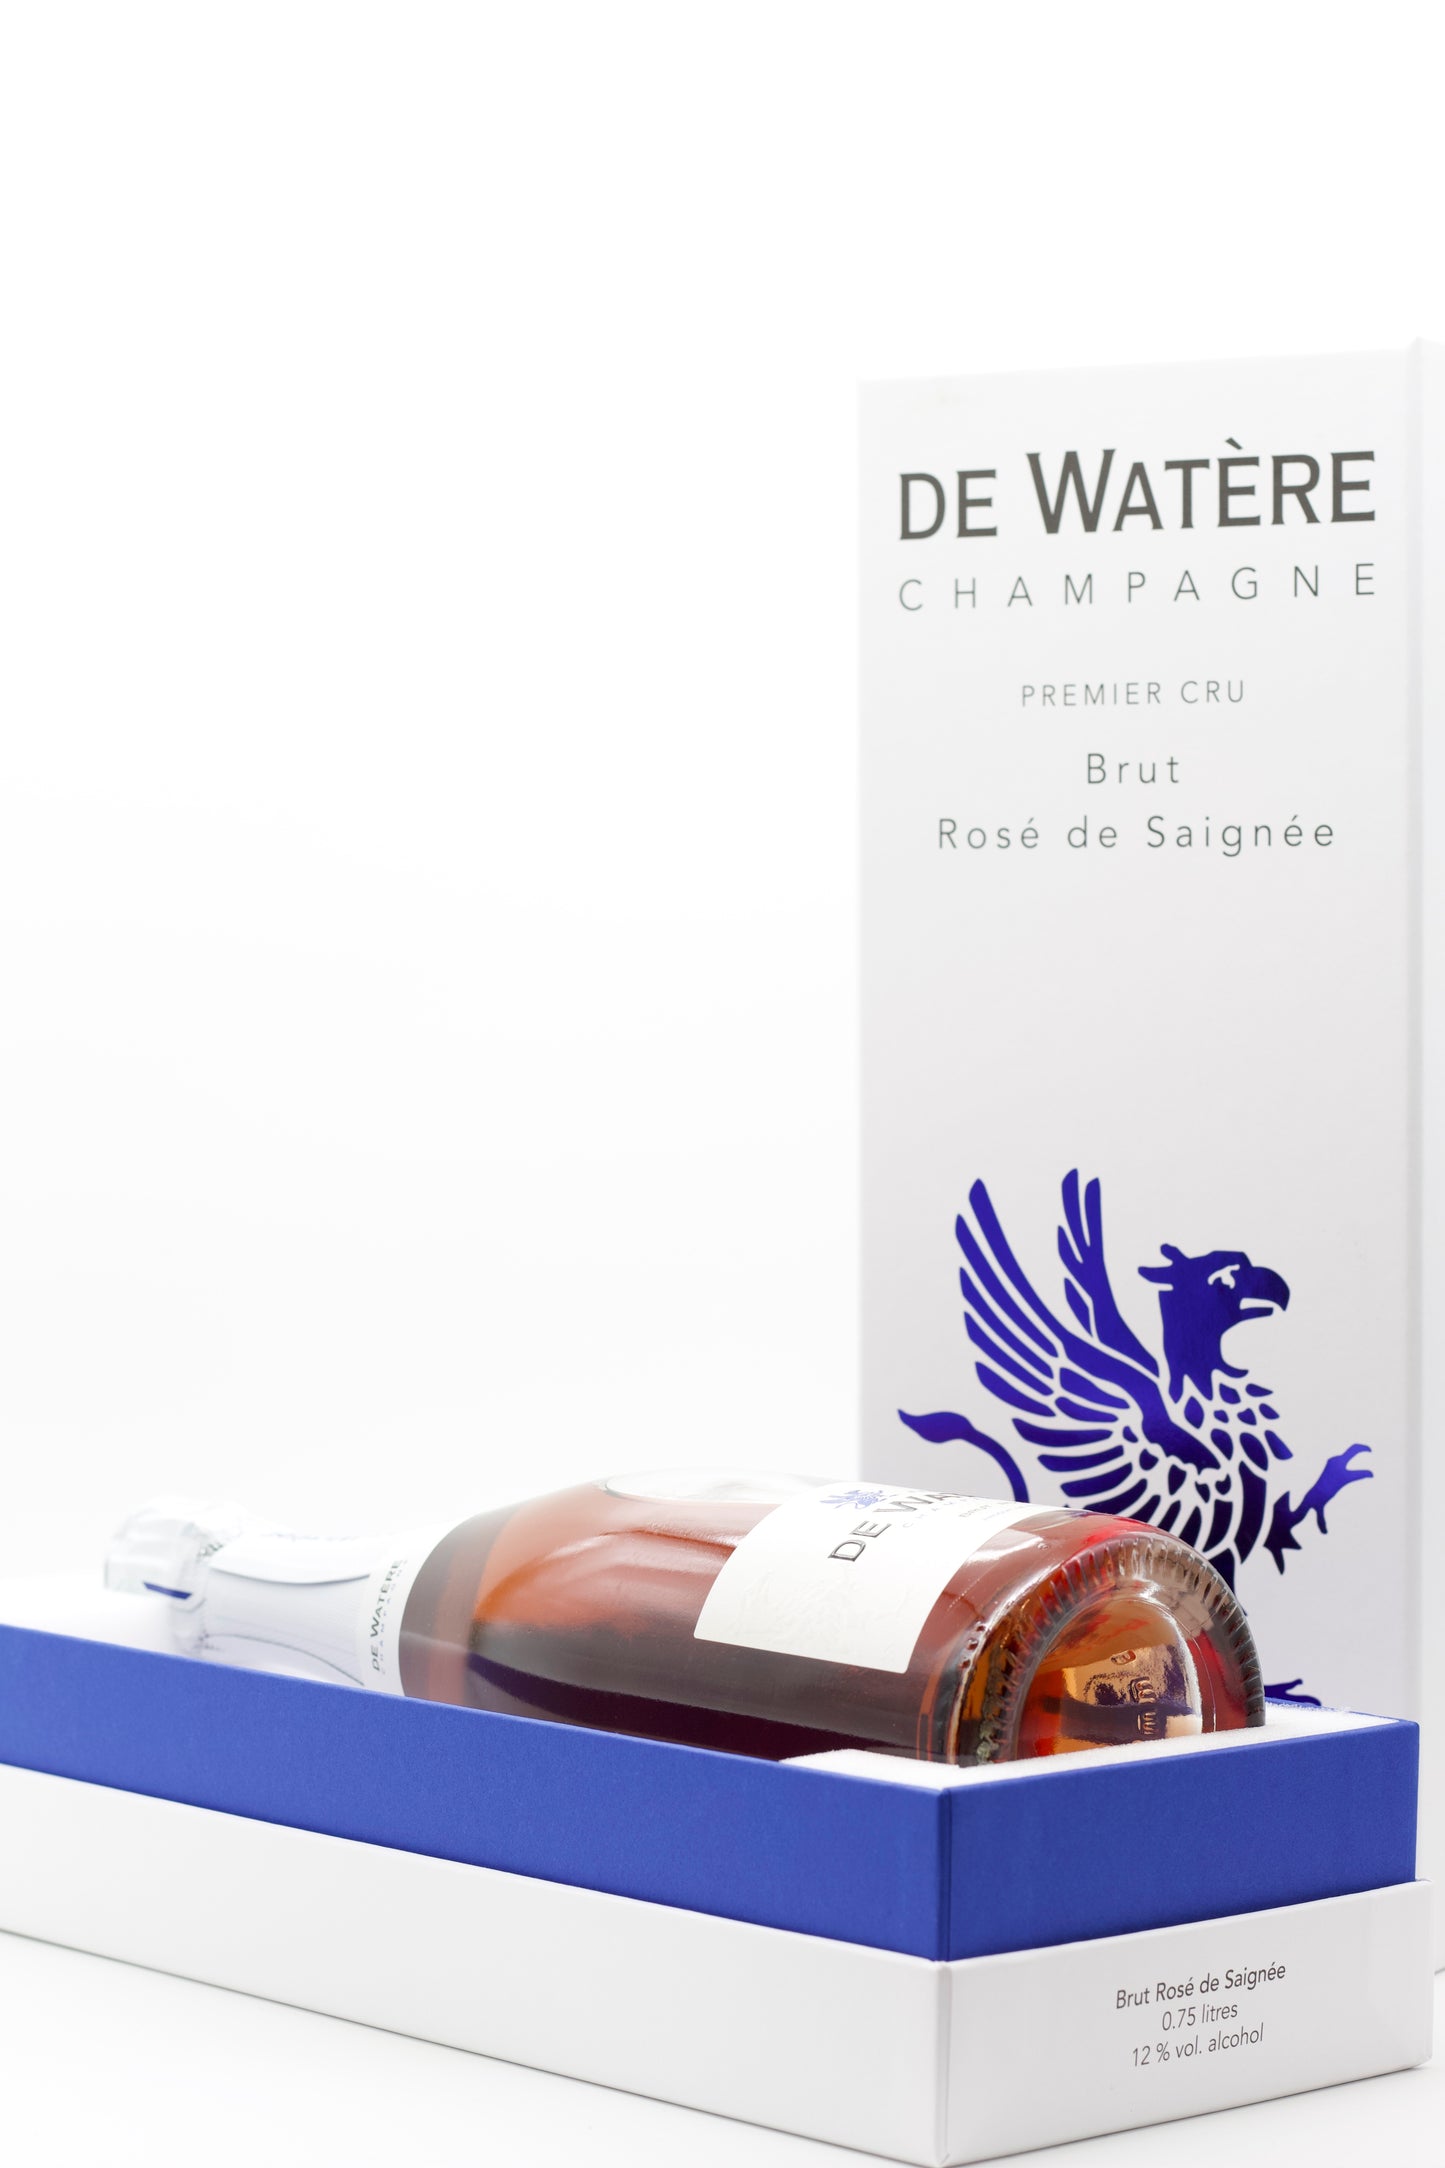 Next Level for De Watère Packaging - De Watère